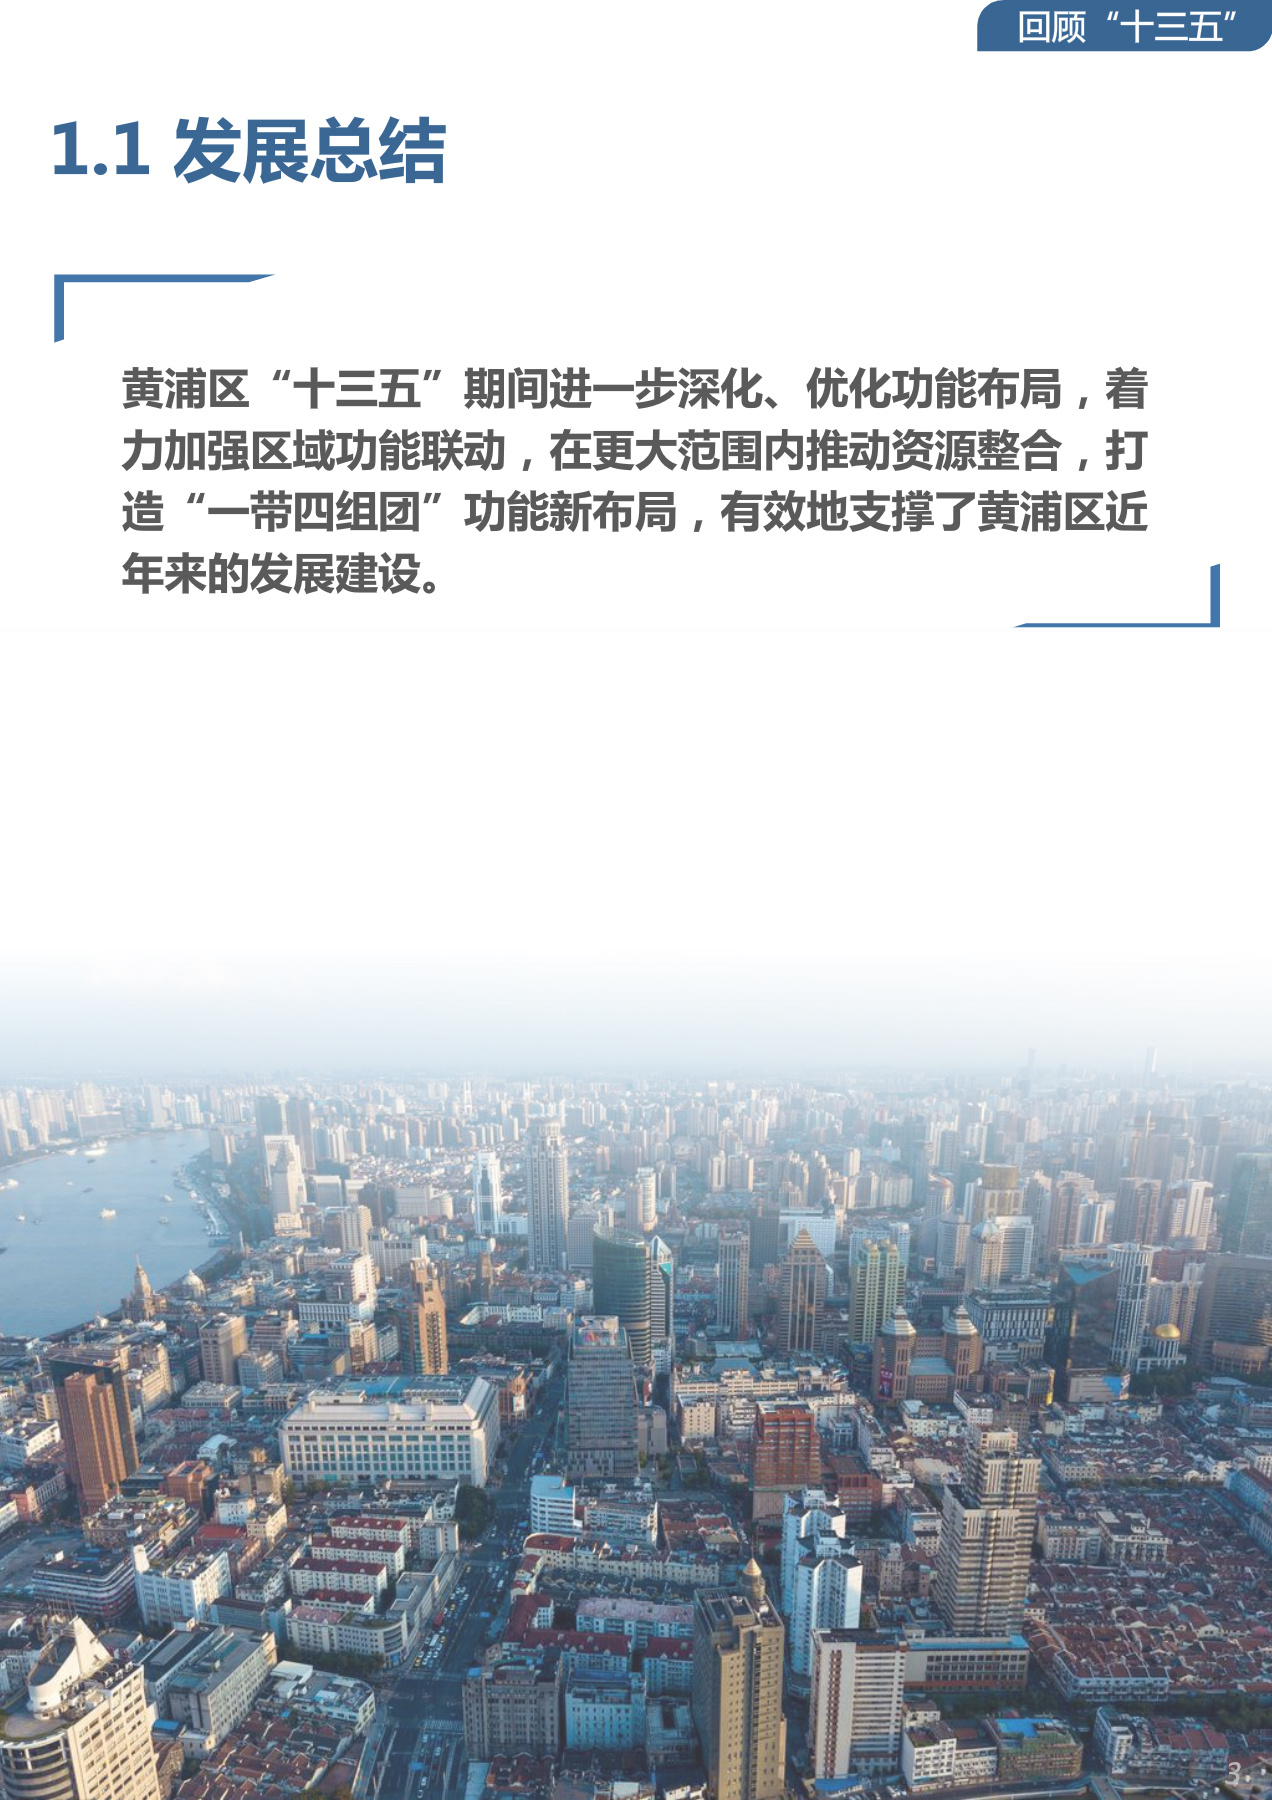 一图读懂 黄浦区空间布局 十四五 规划 上海市黄浦区人民政府